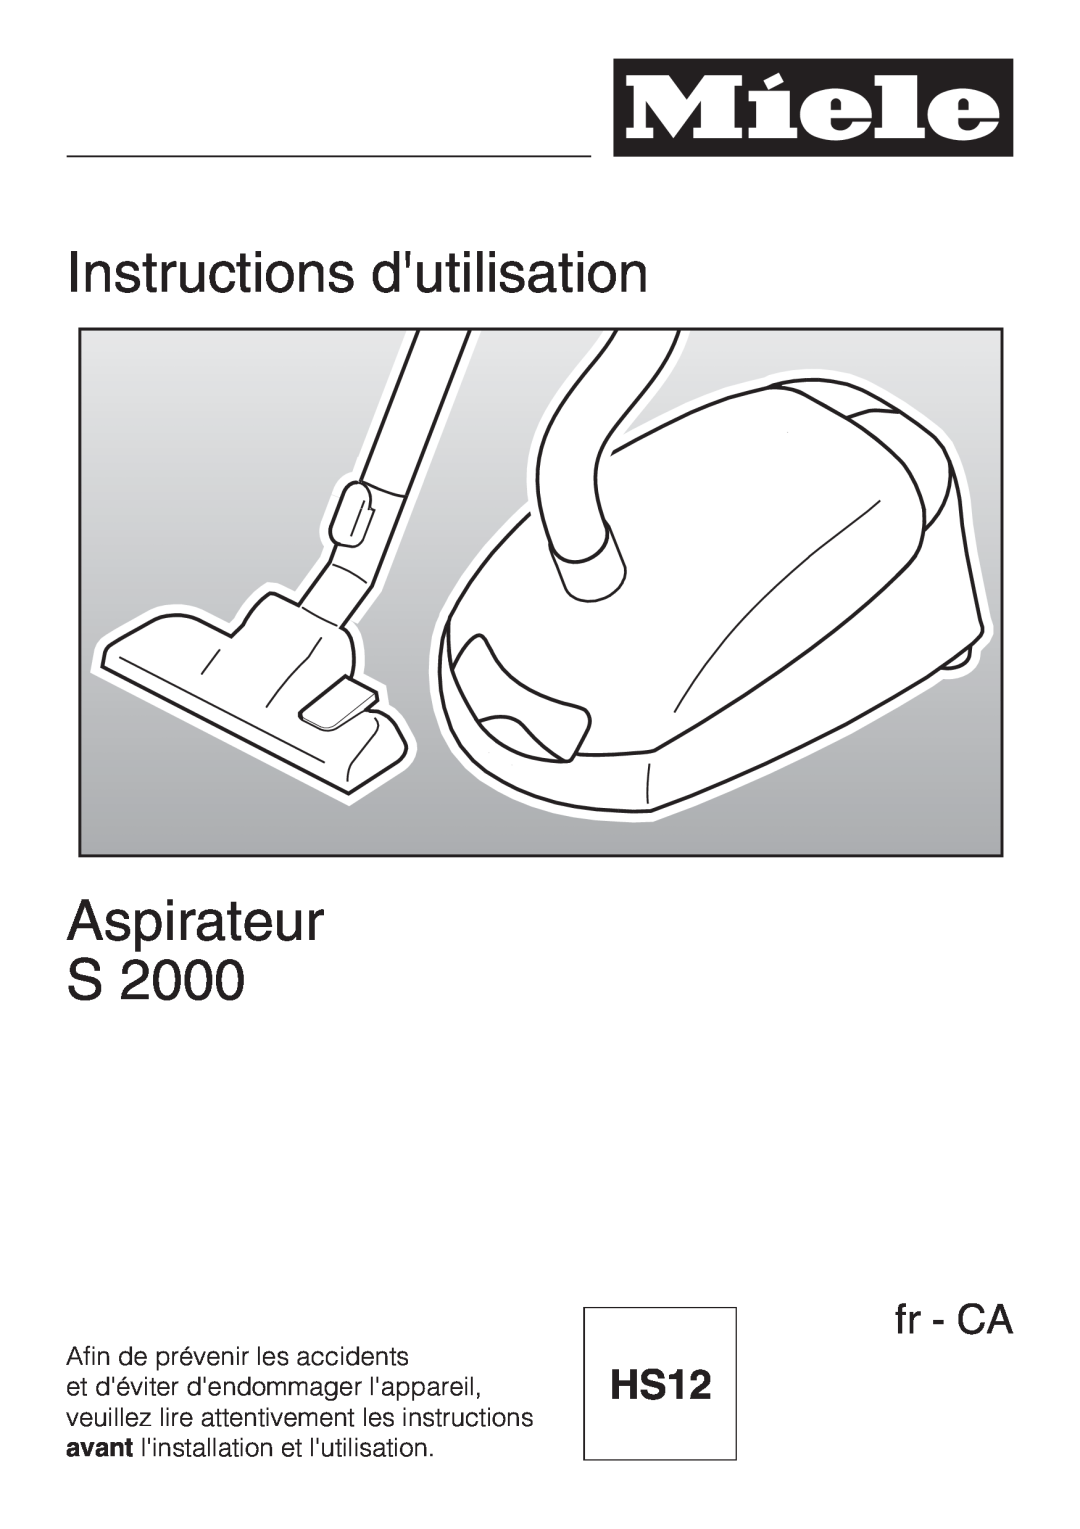 Miele S 2000, S 2120 manual Instructions dutilisation, Aspirateur, fr - CA, HS12 